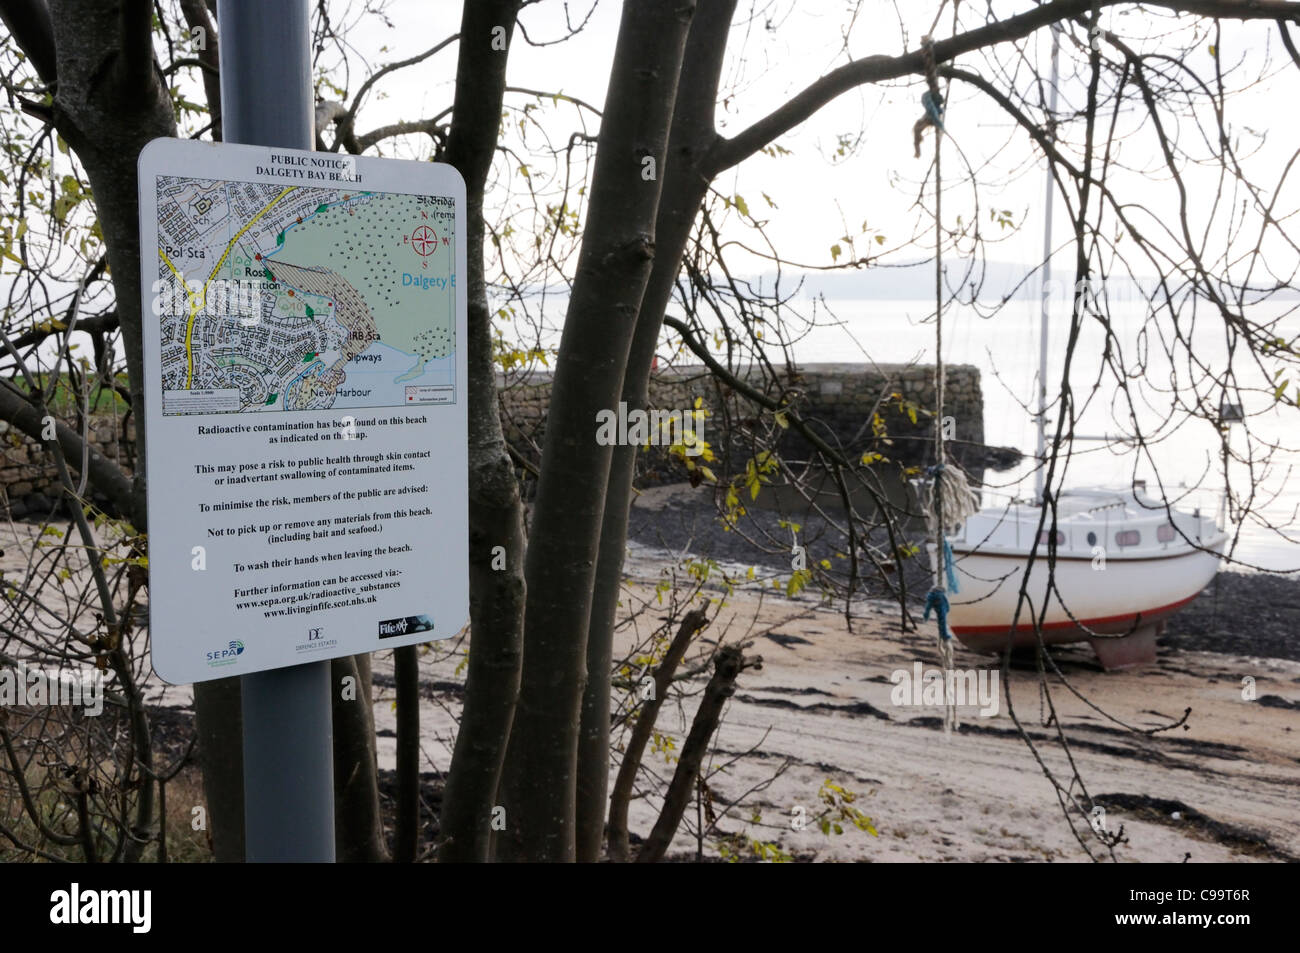 La spiaggia di Porto Nuovo, Dalgety Bay, è una delle aree designate che ha la contaminazione radioattiva. Foto Stock